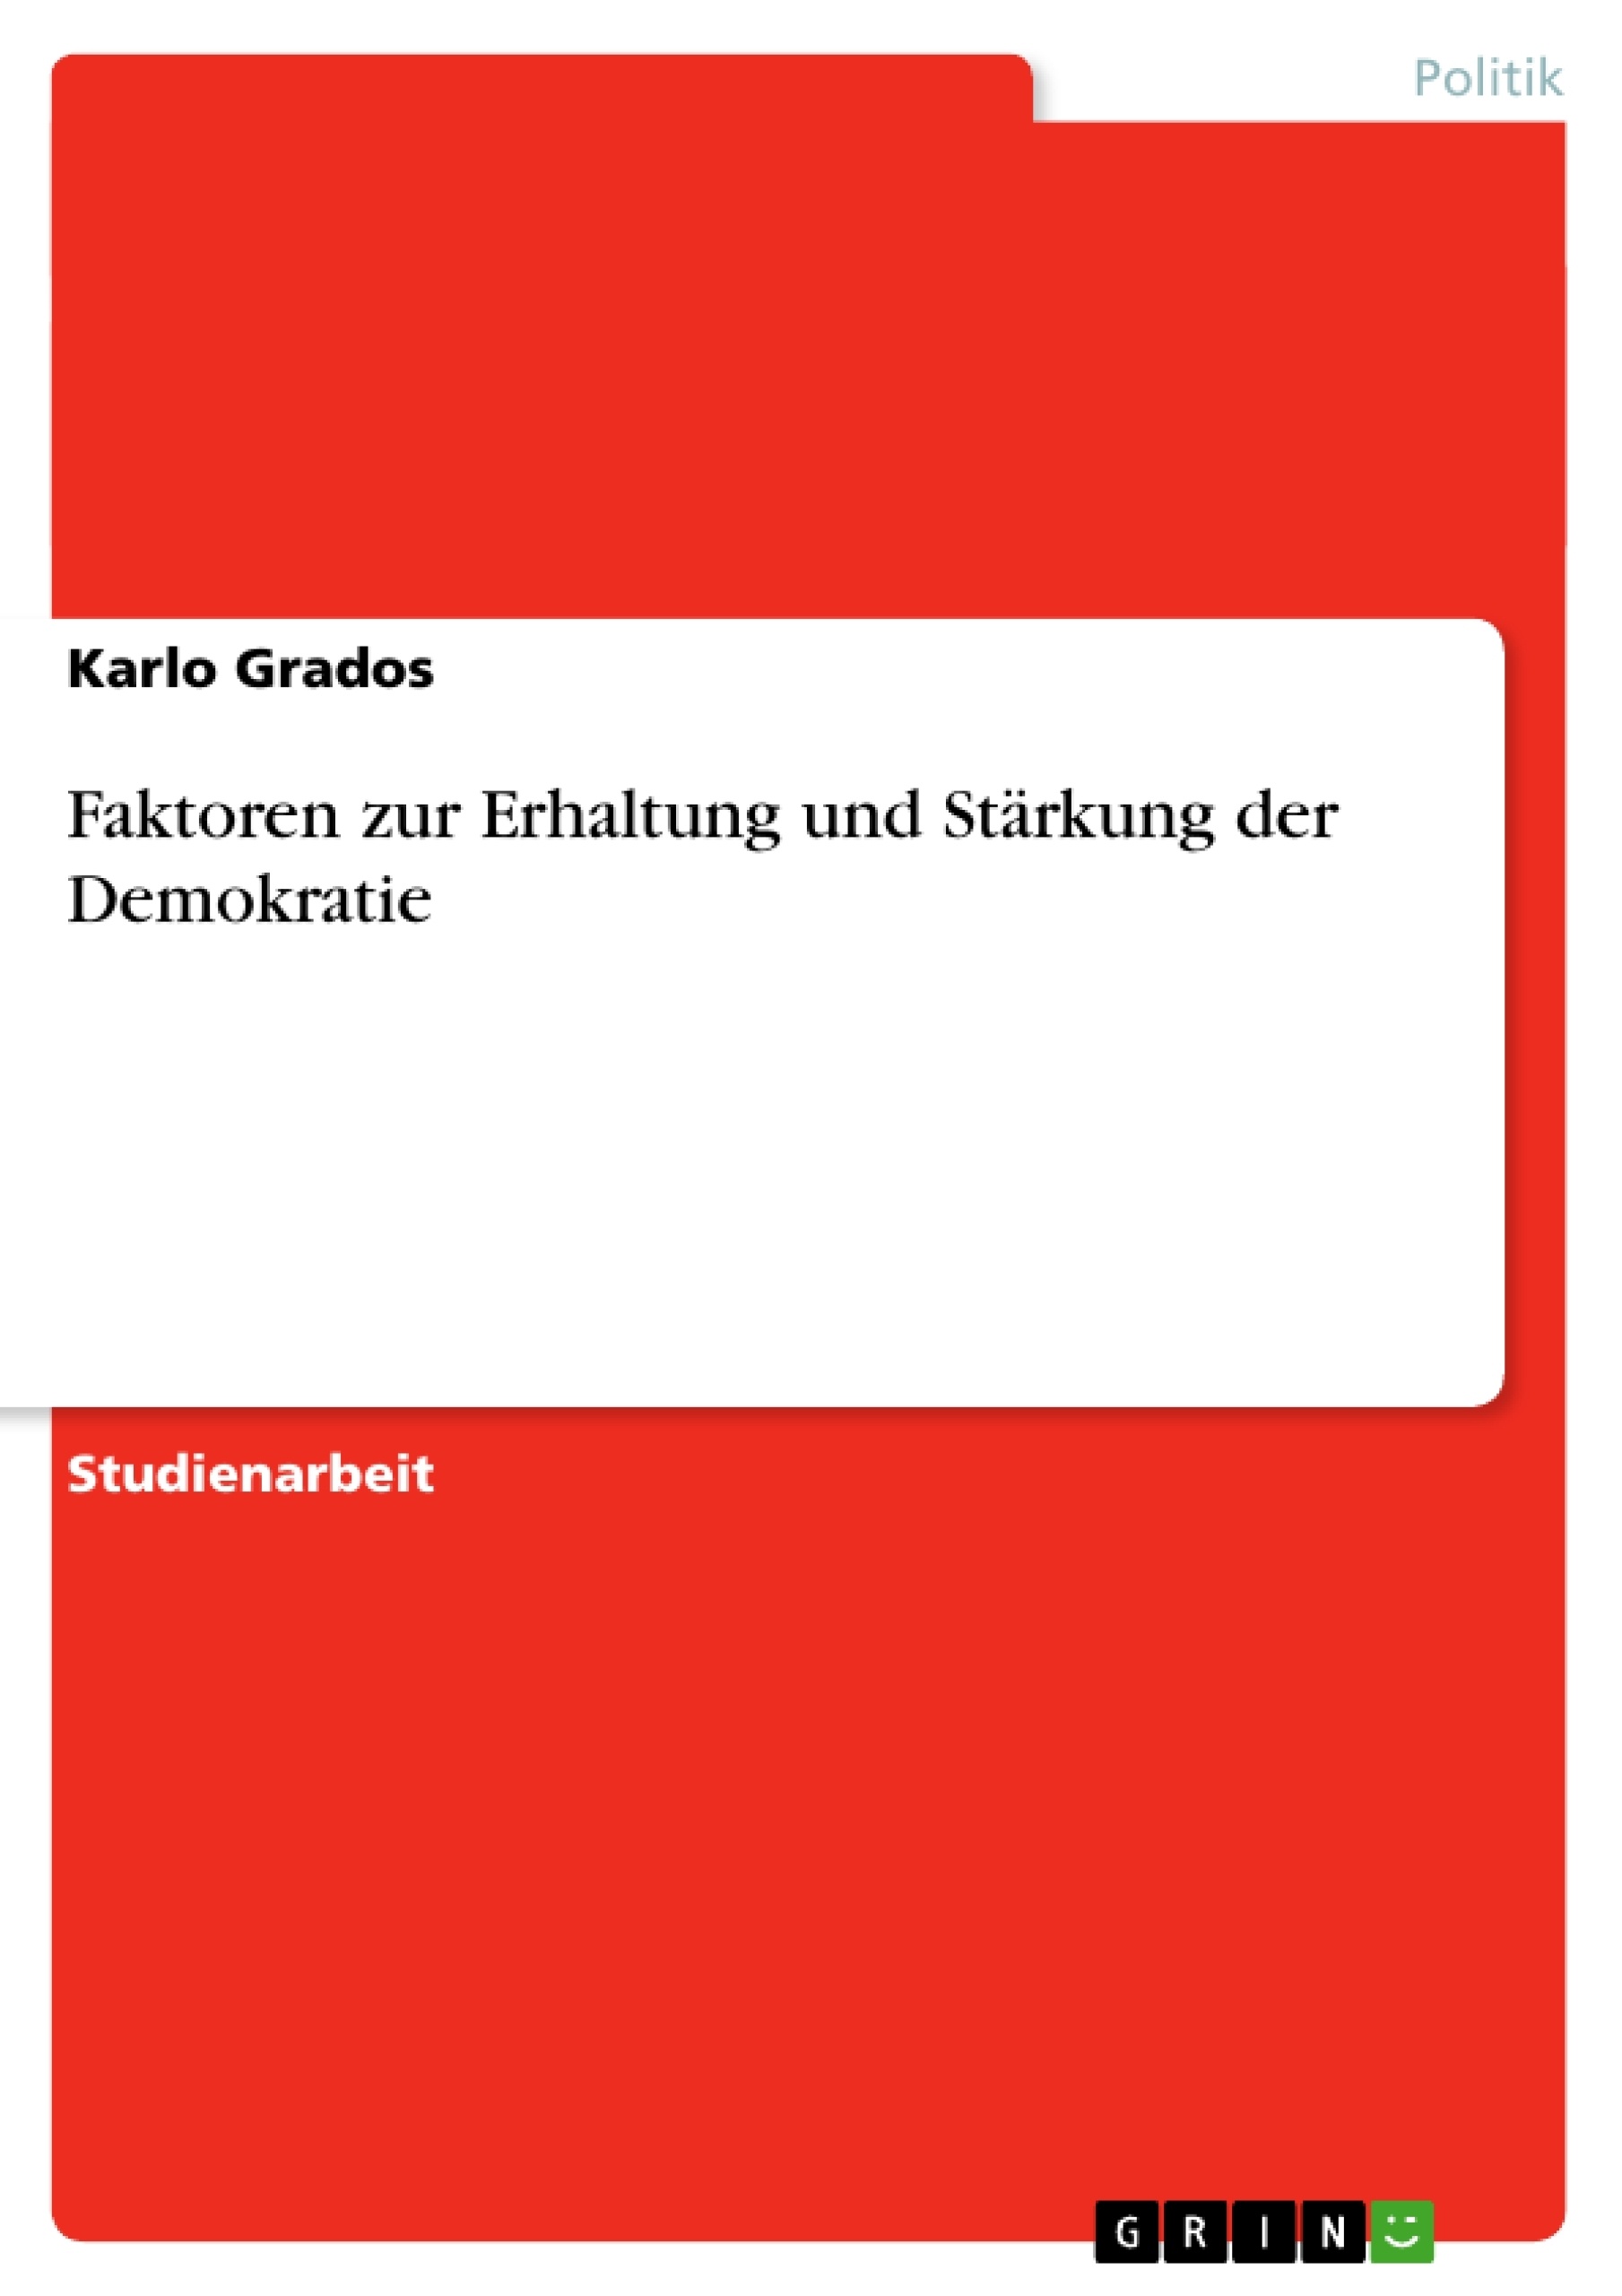 Titre: Faktoren zur Erhaltung und Stärkung der Demokratie